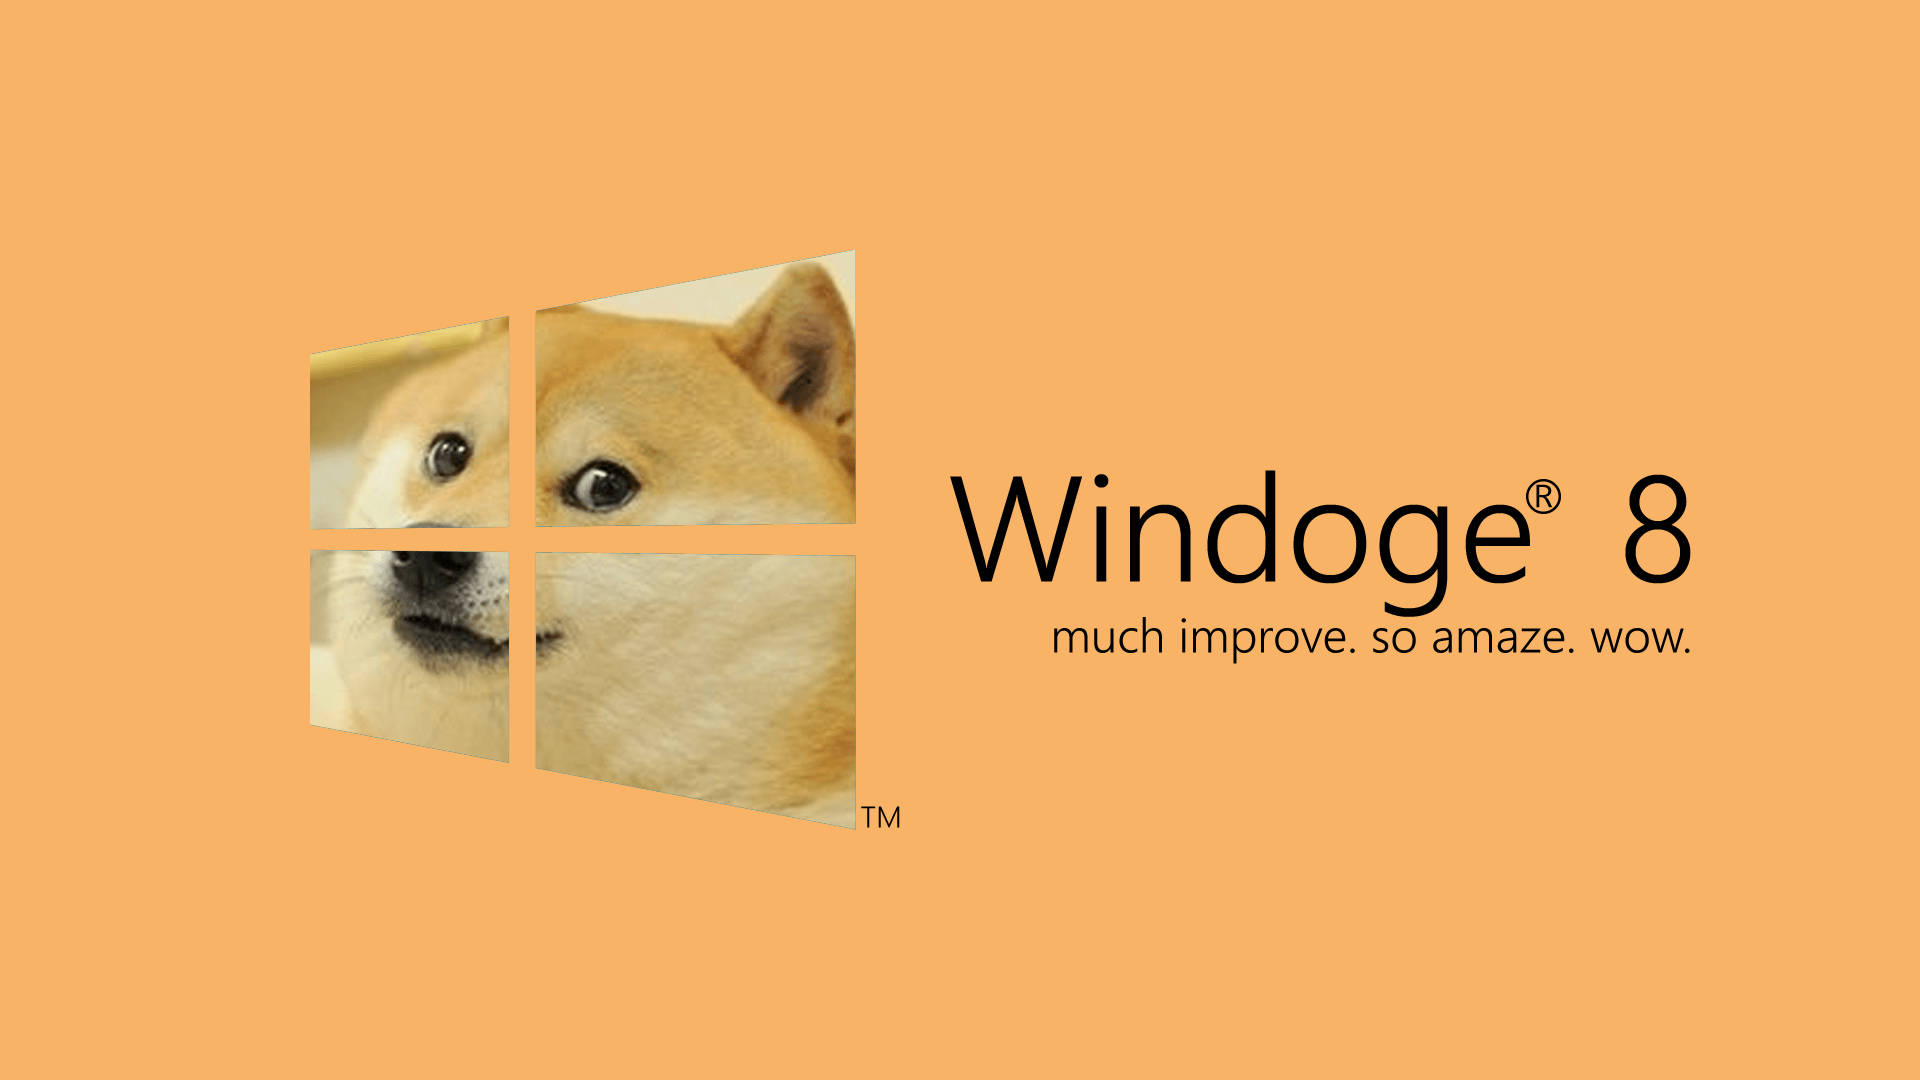 Doge Windoge 8 Meme